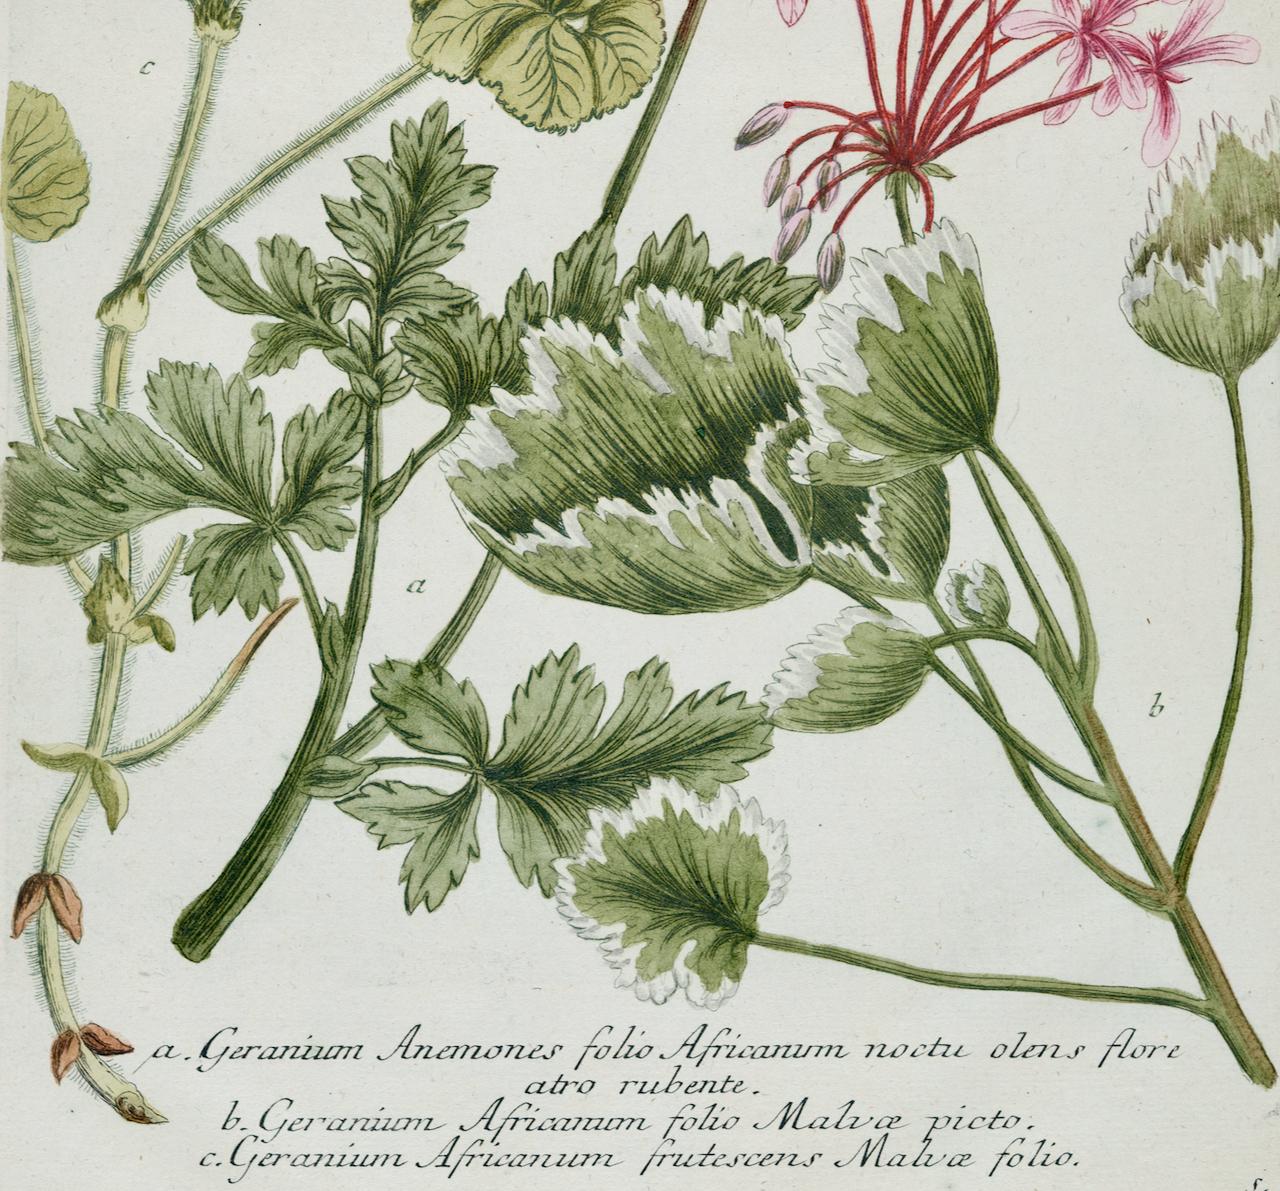 Es handelt sich um einen originalen, antiken, kolorierten botanischen Schabkunststich von blühenden roten Geranien, der mit Handkolorierung versehen ist. Es trägt den Titel 